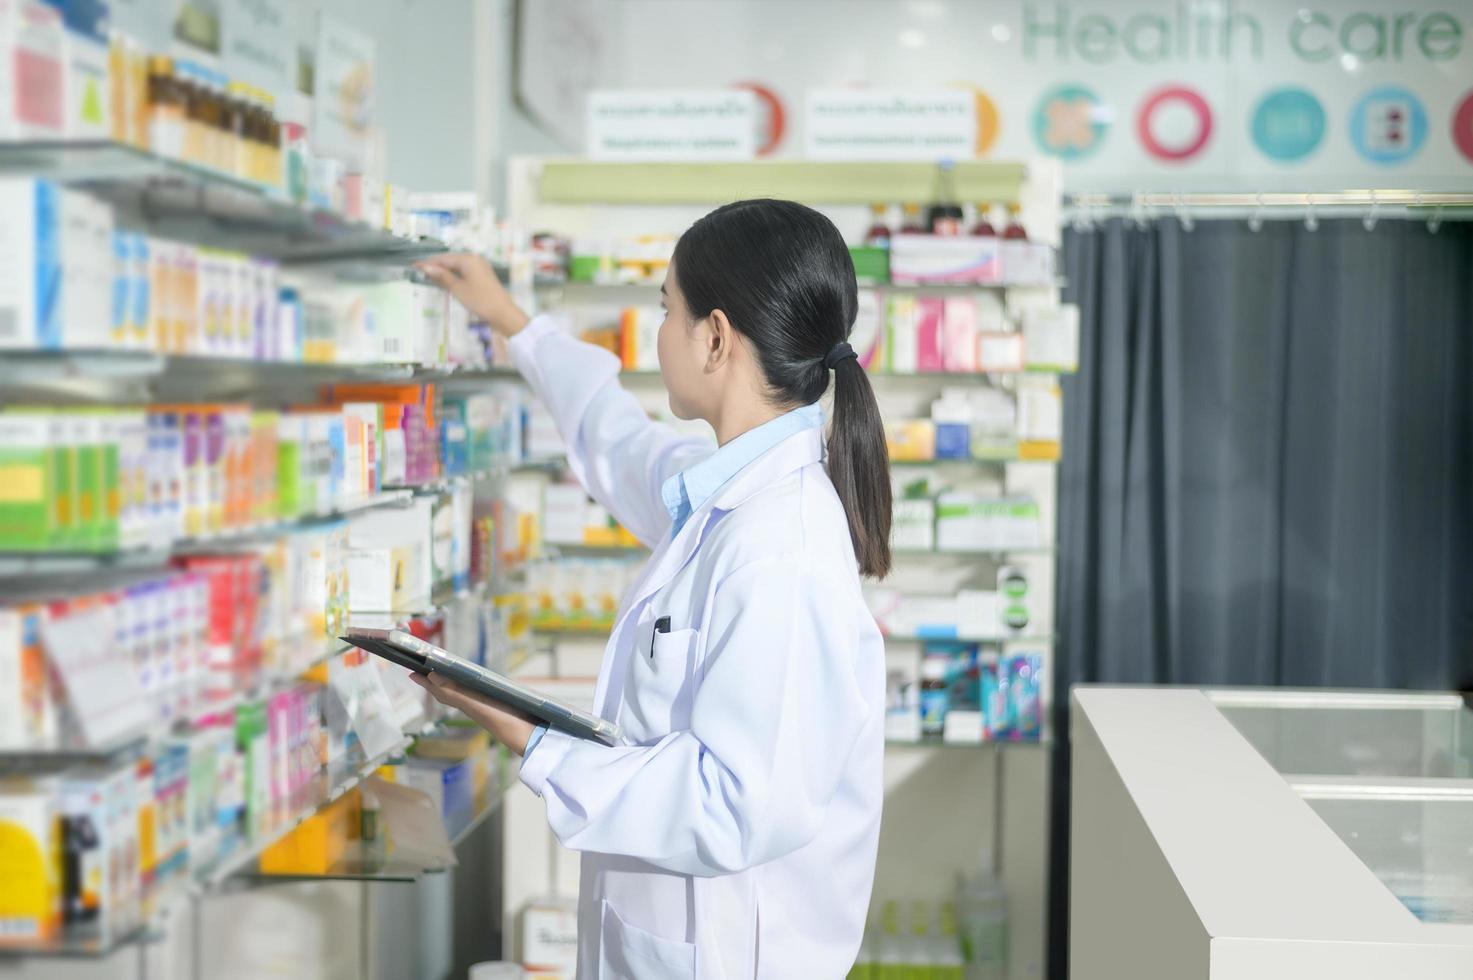 ritratto di farmacista donna che utilizza tablet in una moderna farmacia farmacia. foto